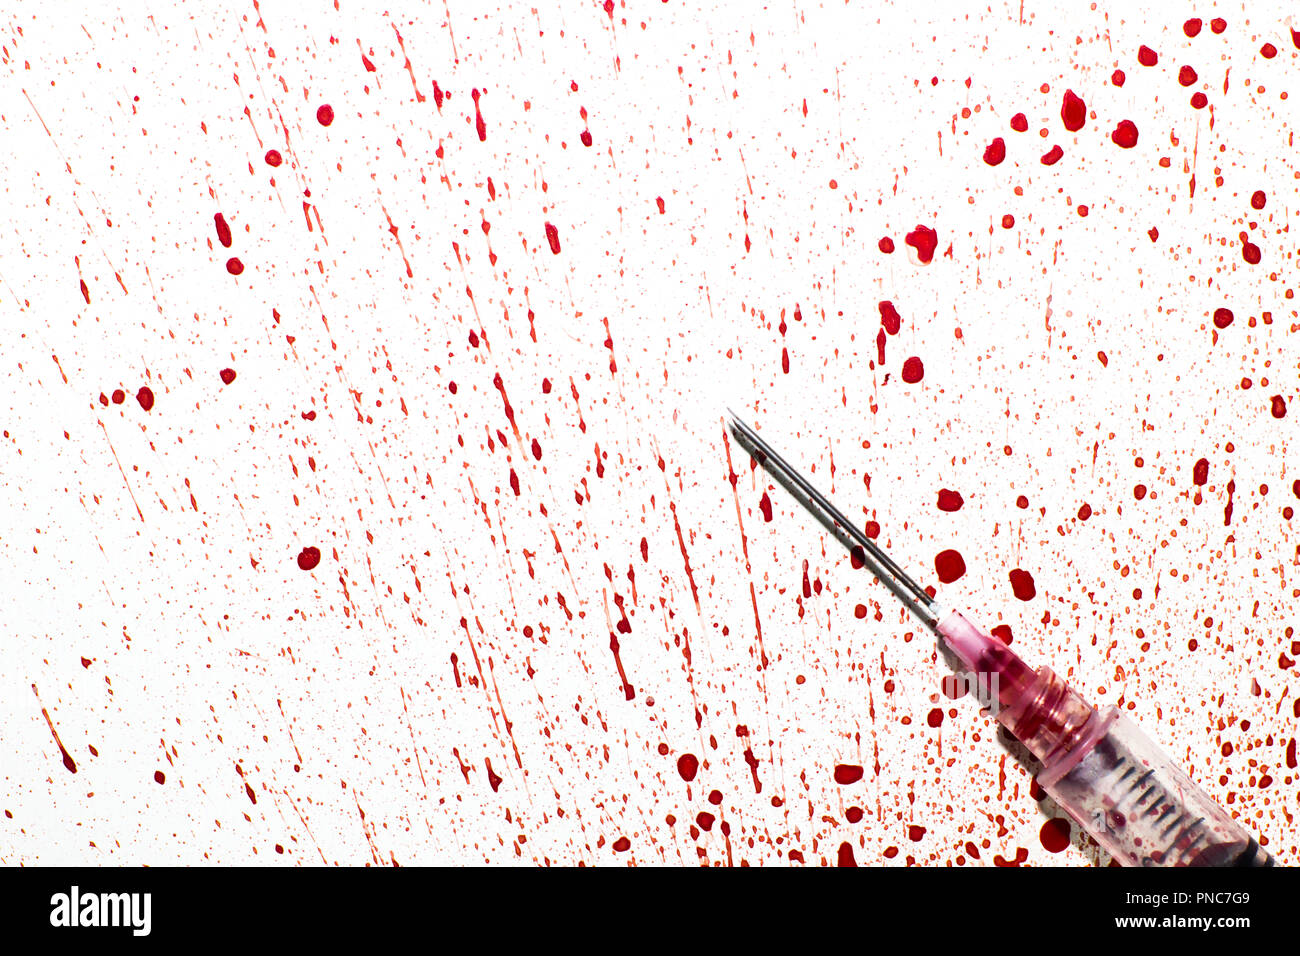 Spritze und Schlauch mit Blut auf weißem Hintergrund - Stockfotografie:  lizenzfreie Fotos © daboost 253115464